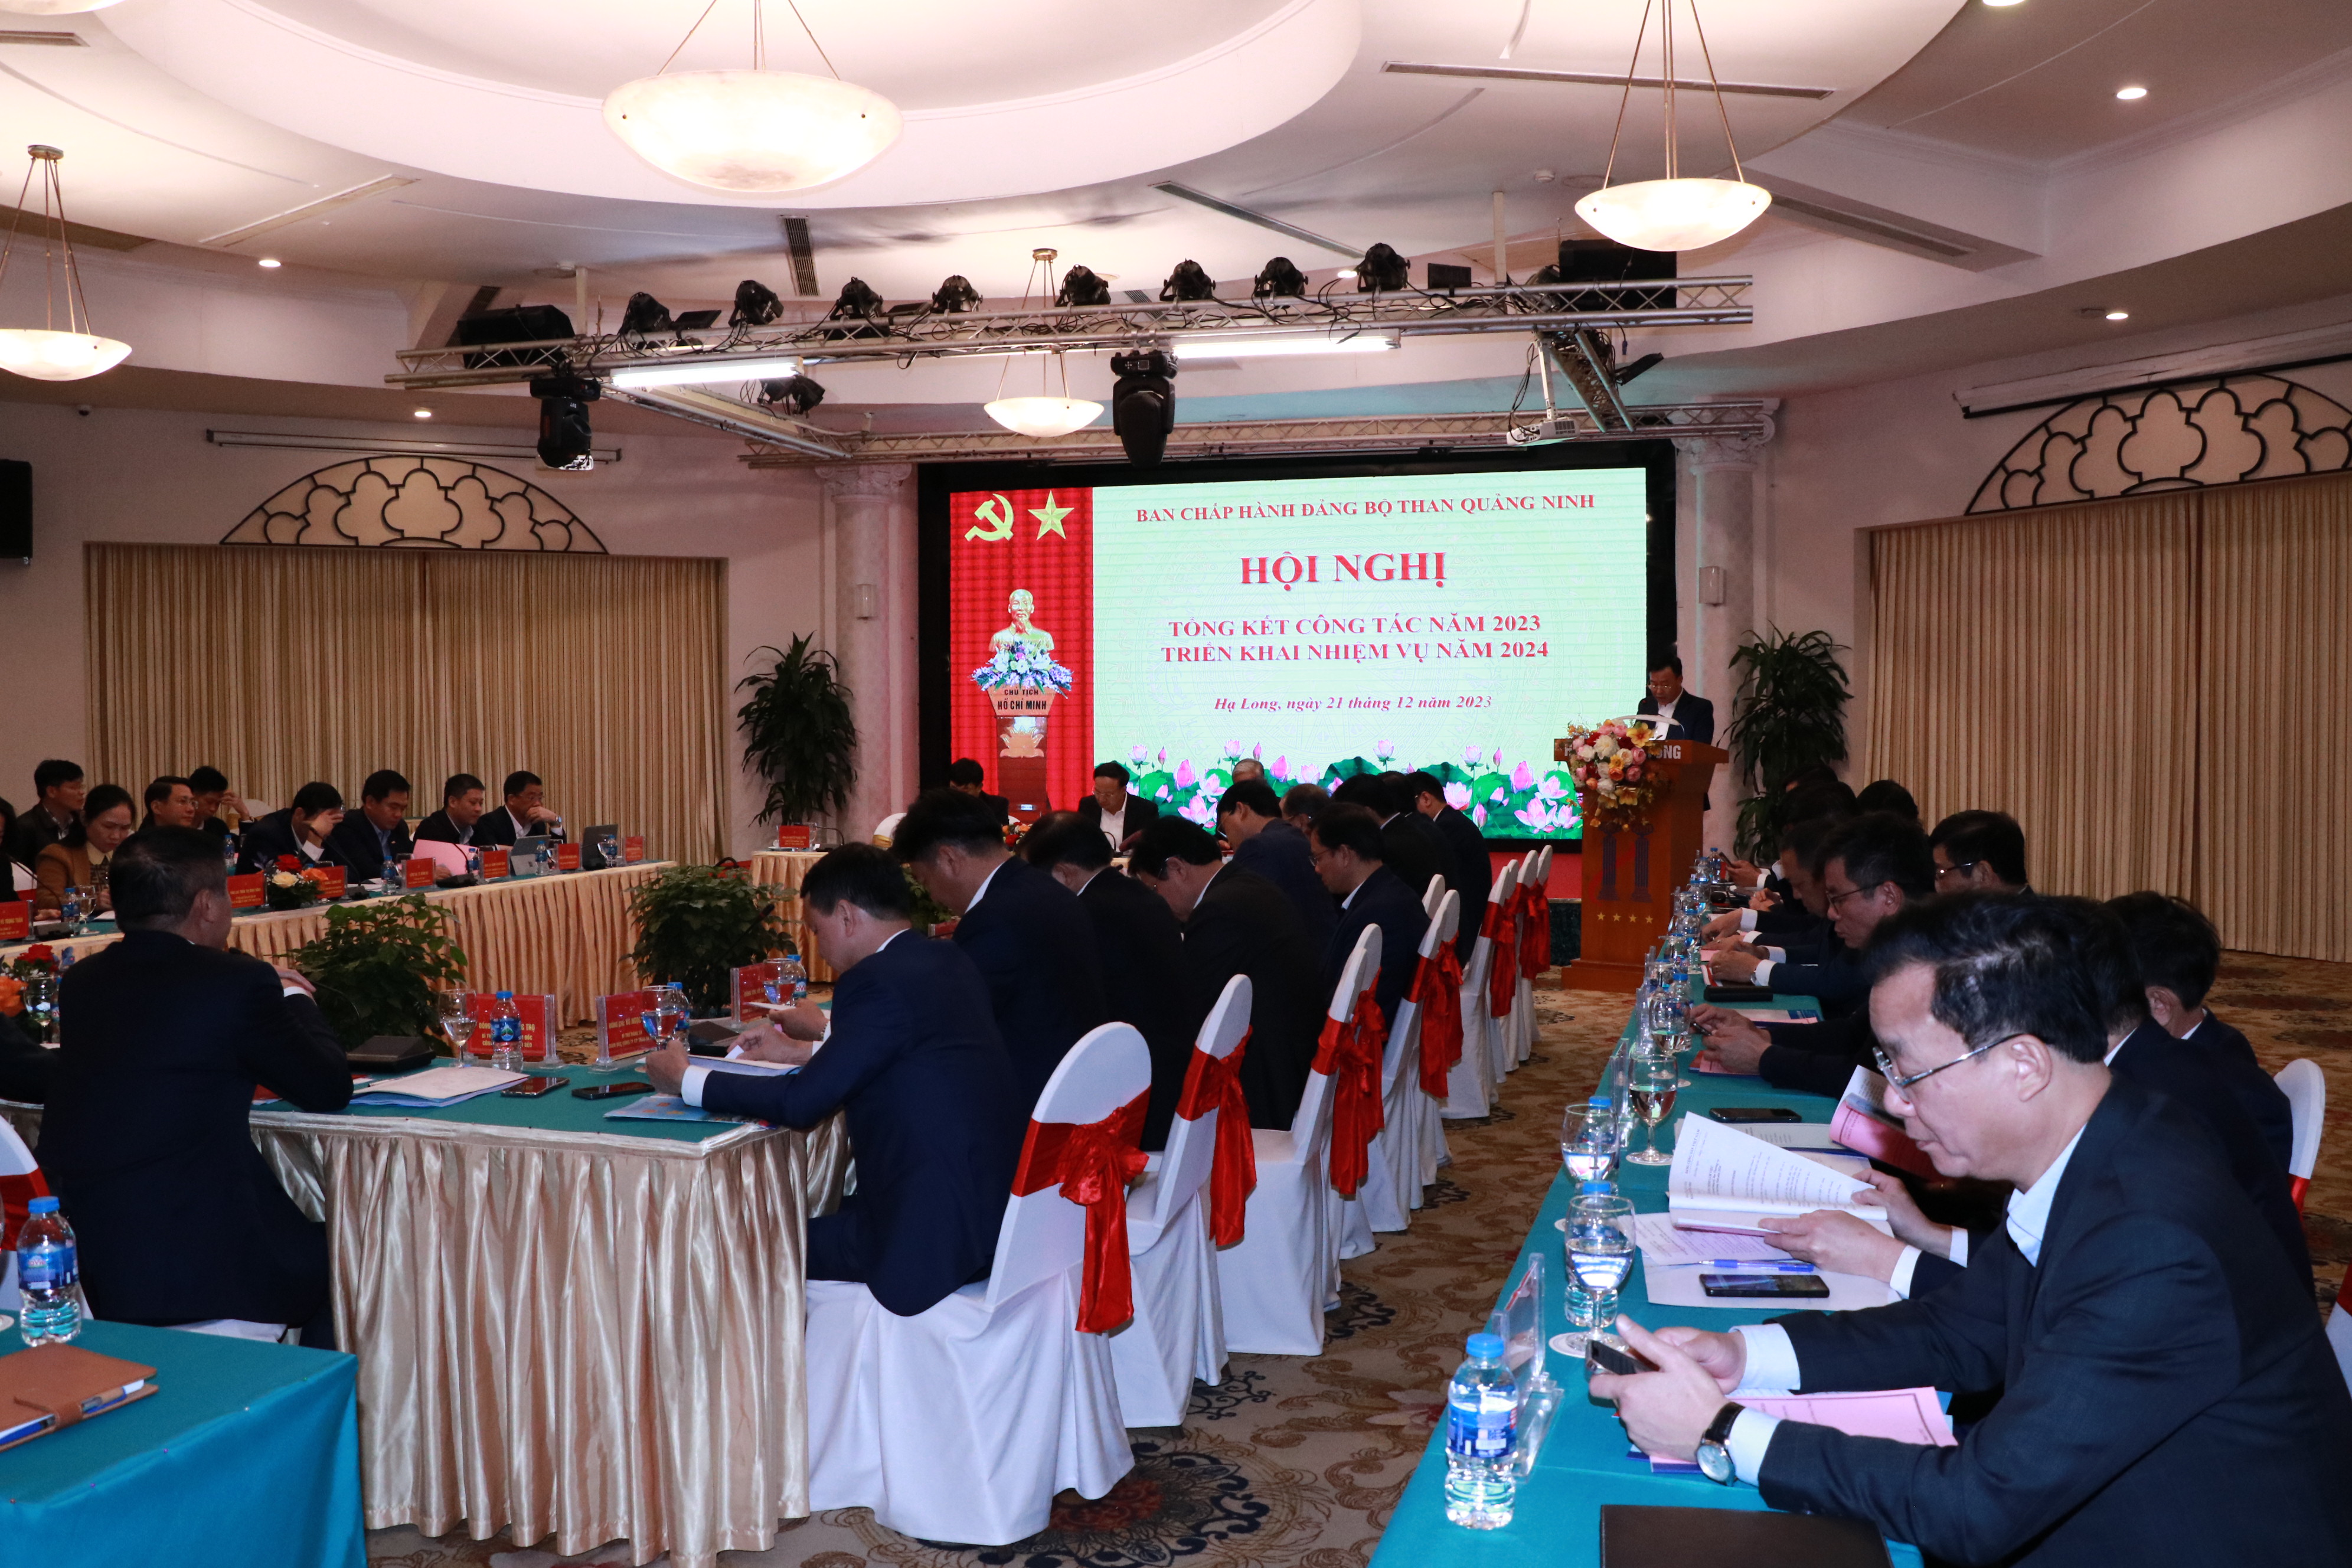 Ban chấp hành Đảng bộ Than Quảng Ninh triển khai Nghị quyết về phương hướng, nhiệm vụ năm 2024